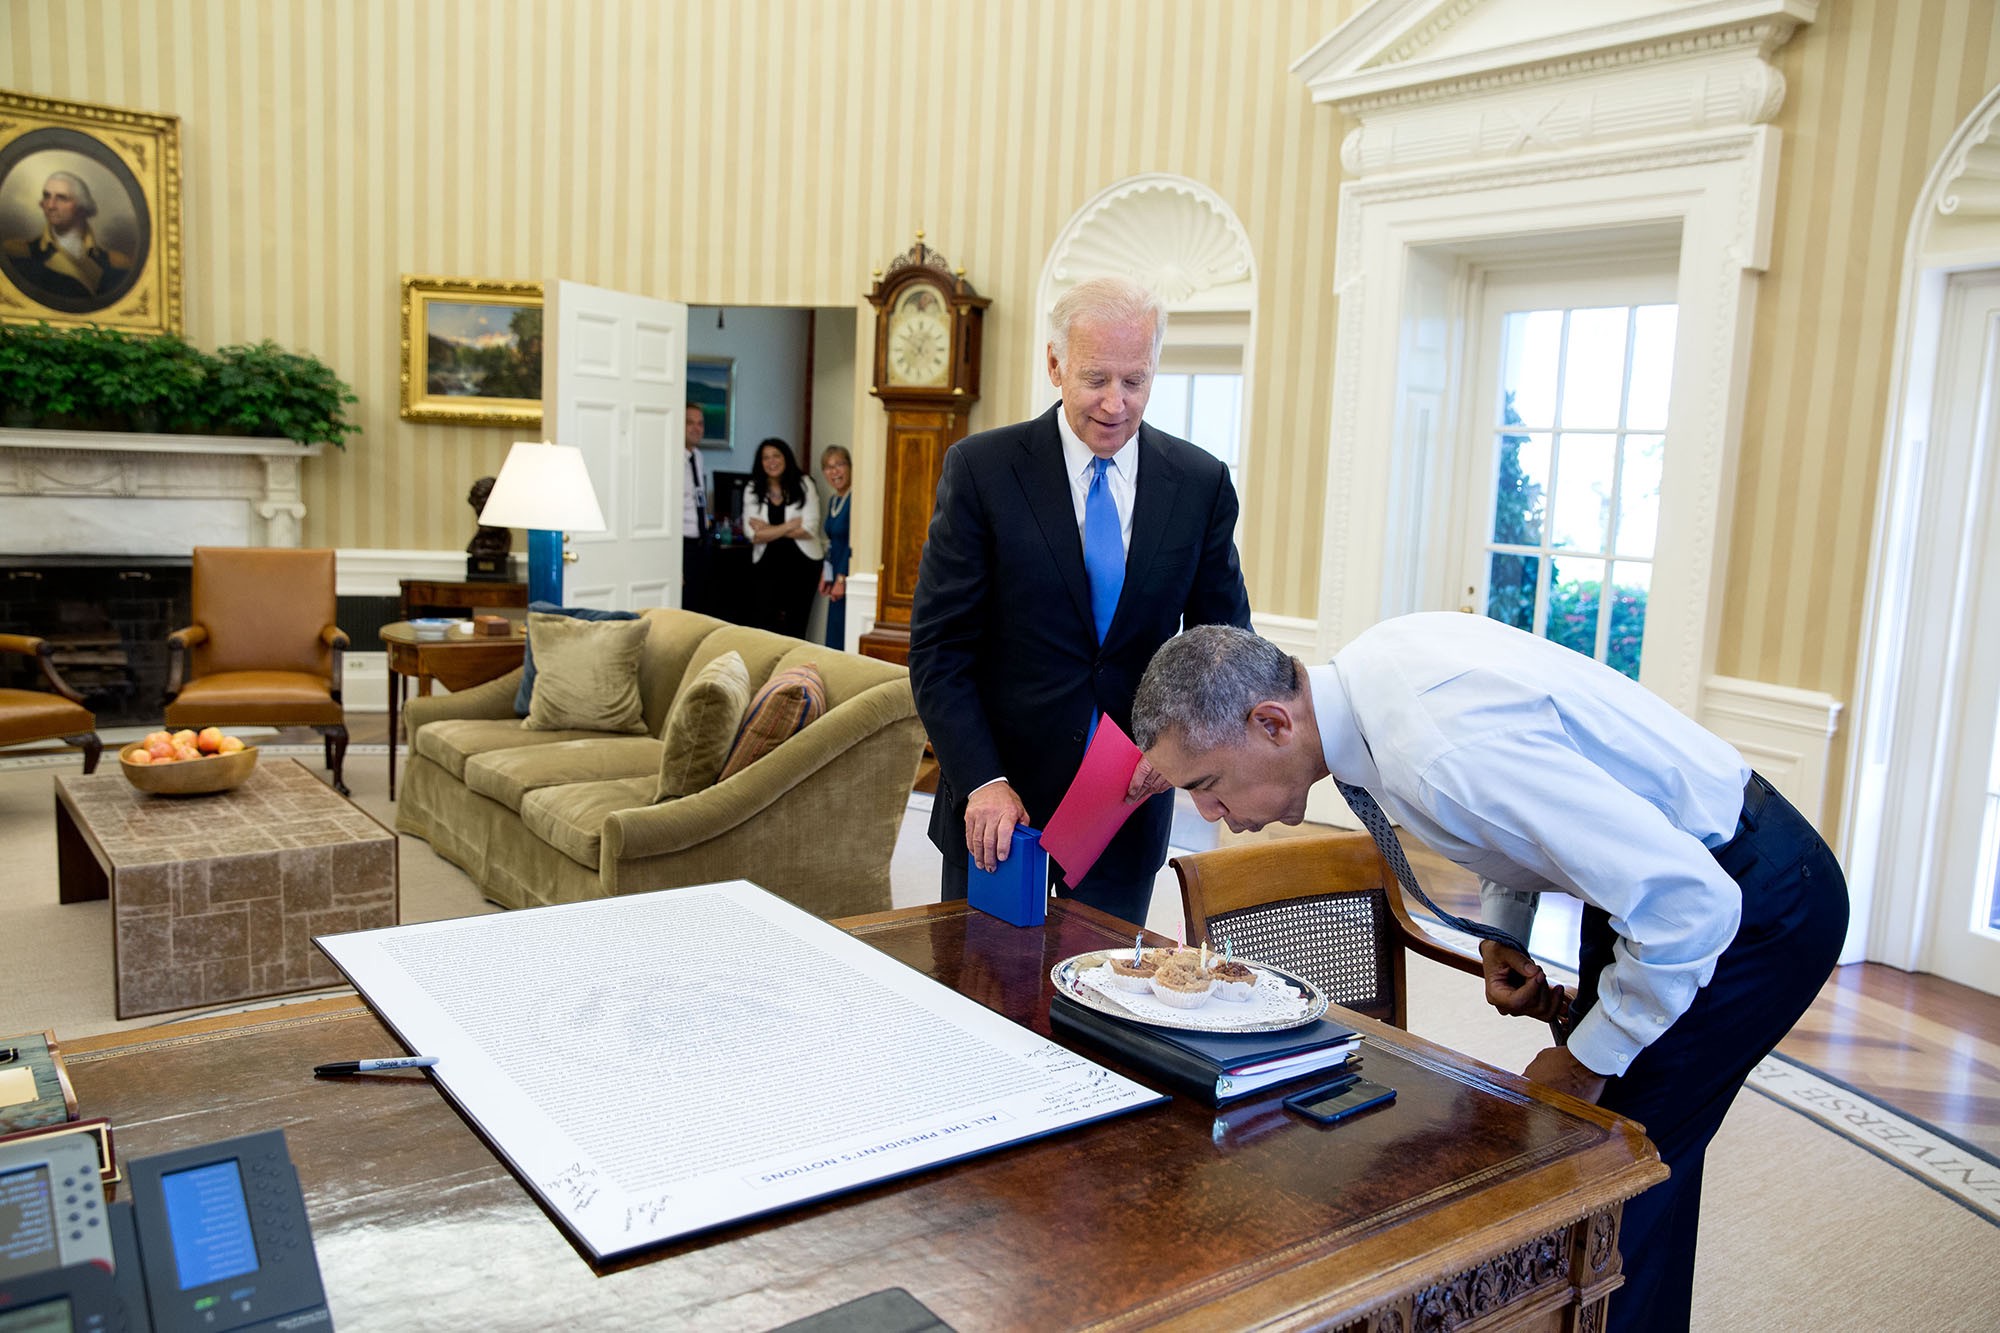 โอบามาเป่าเทียนบนคัพเค้กฉลองวันเกิดที่ไบเดนและเจ้าหน้าที่ทำเนียบขาวนำมามอบให้เป็นการเซอร์ไพรส์ เมื่อ 4 สิงหาคม 2559 / Official White House Photo by Pete Souza